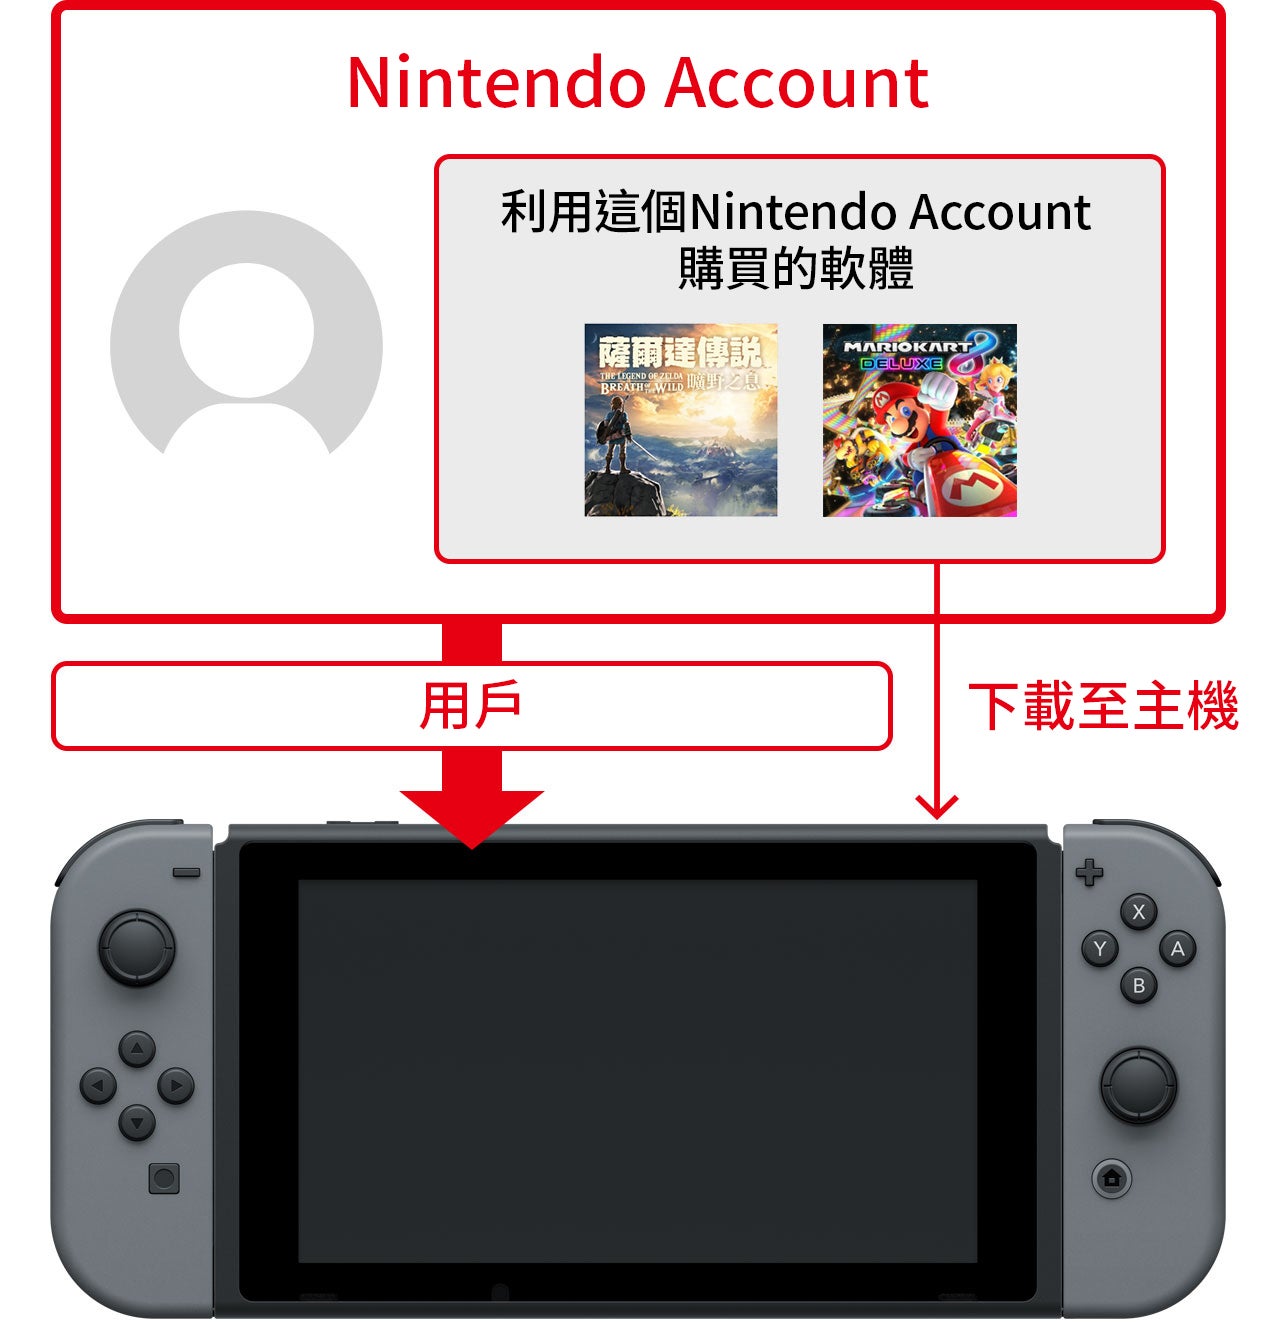 利用這個Nintendo Account購買的軟體